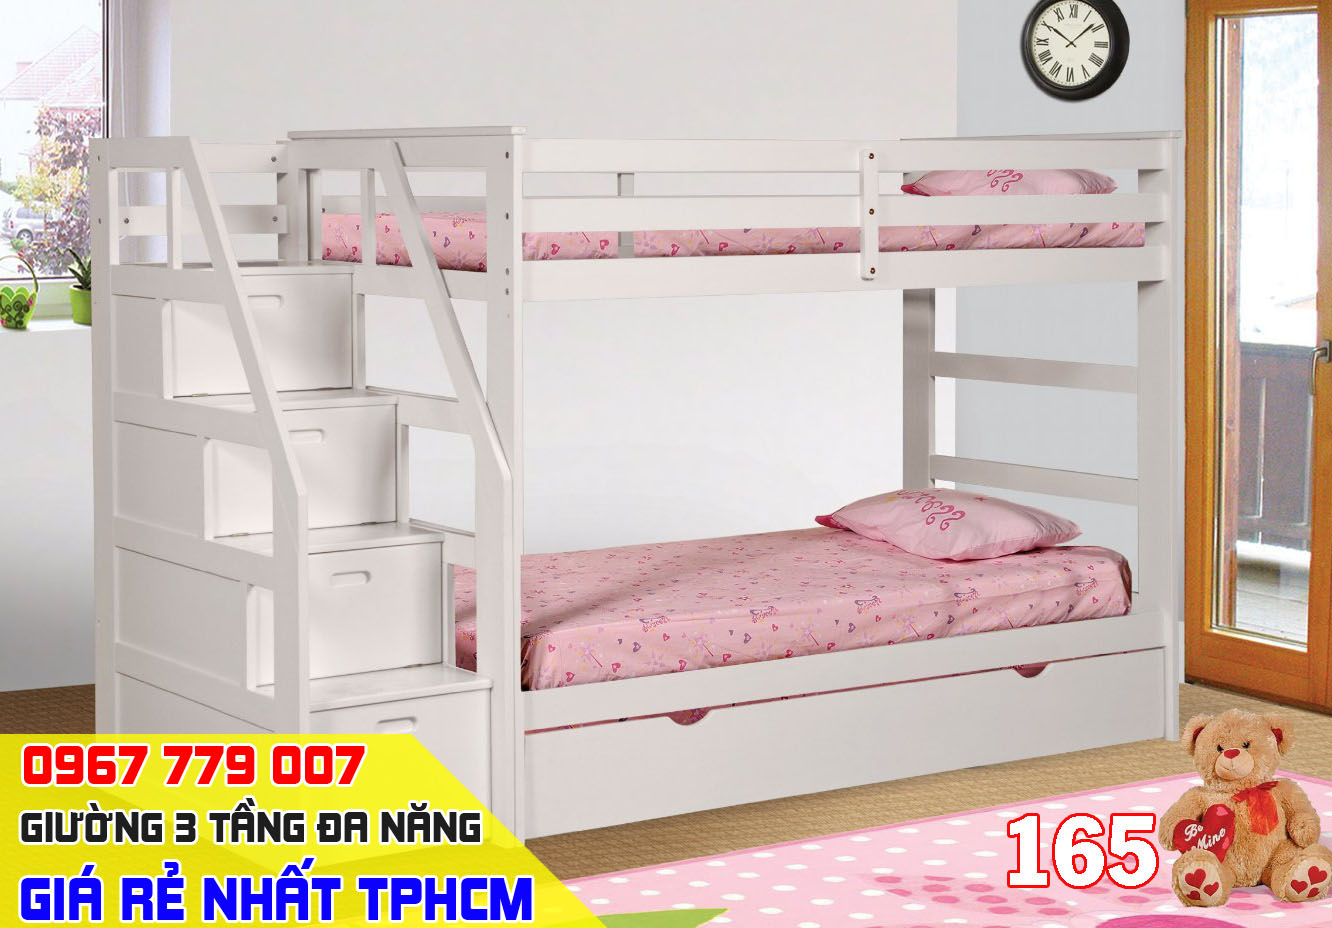 giường 3 tầng 165 giá rẻ tại tphcm